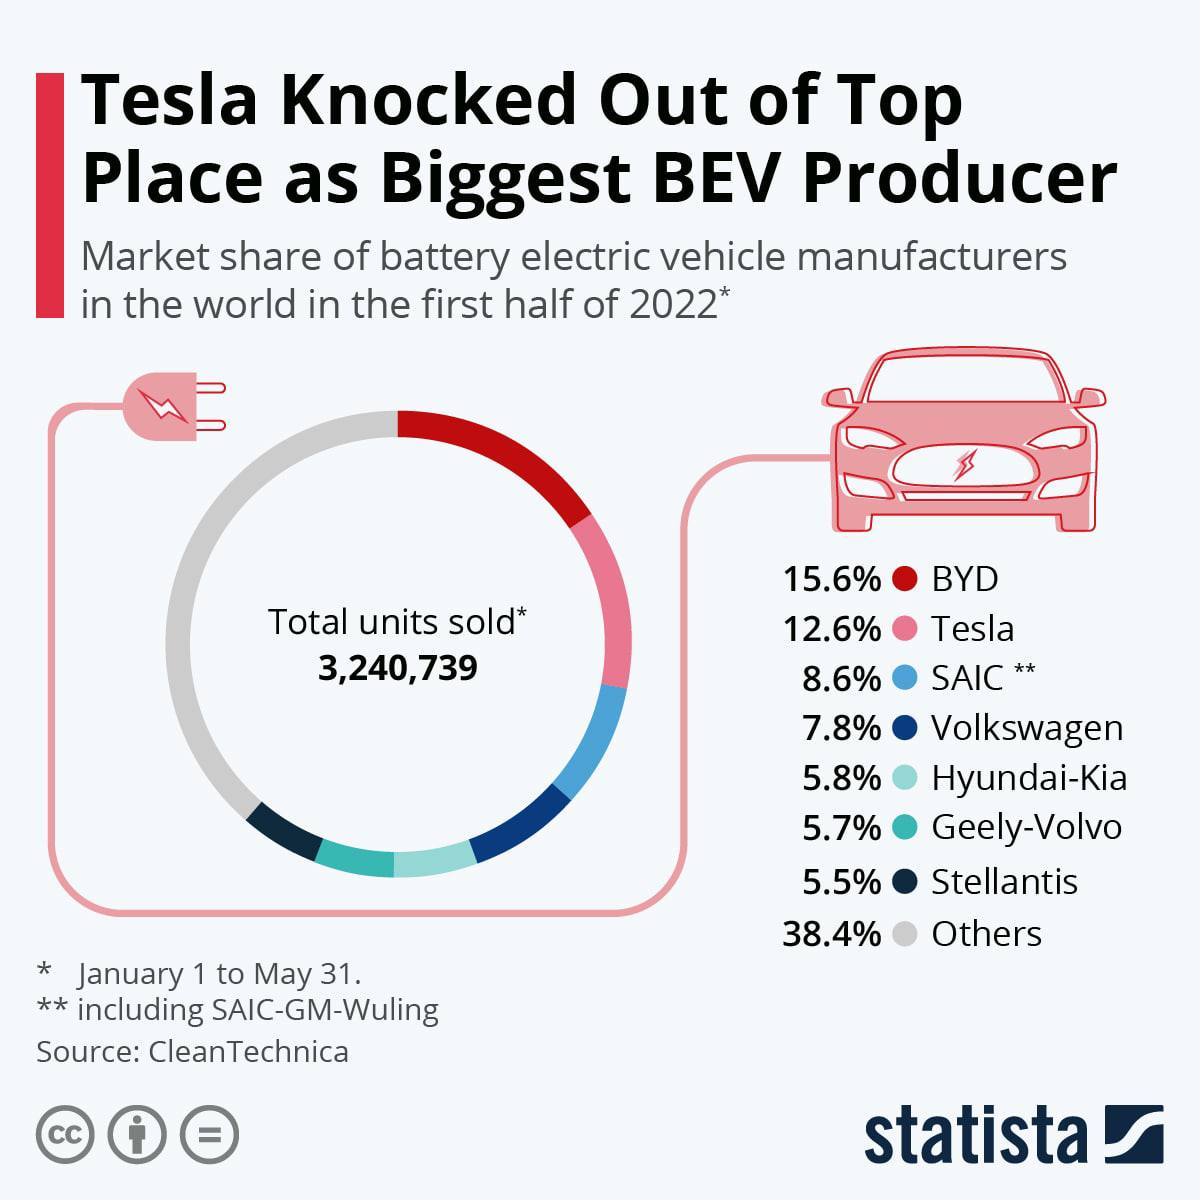 Китайский производитель электроавтомобилей BYD стал лидером по производству автомобилей в 2022 году, обогнав Tesla по доле рынка